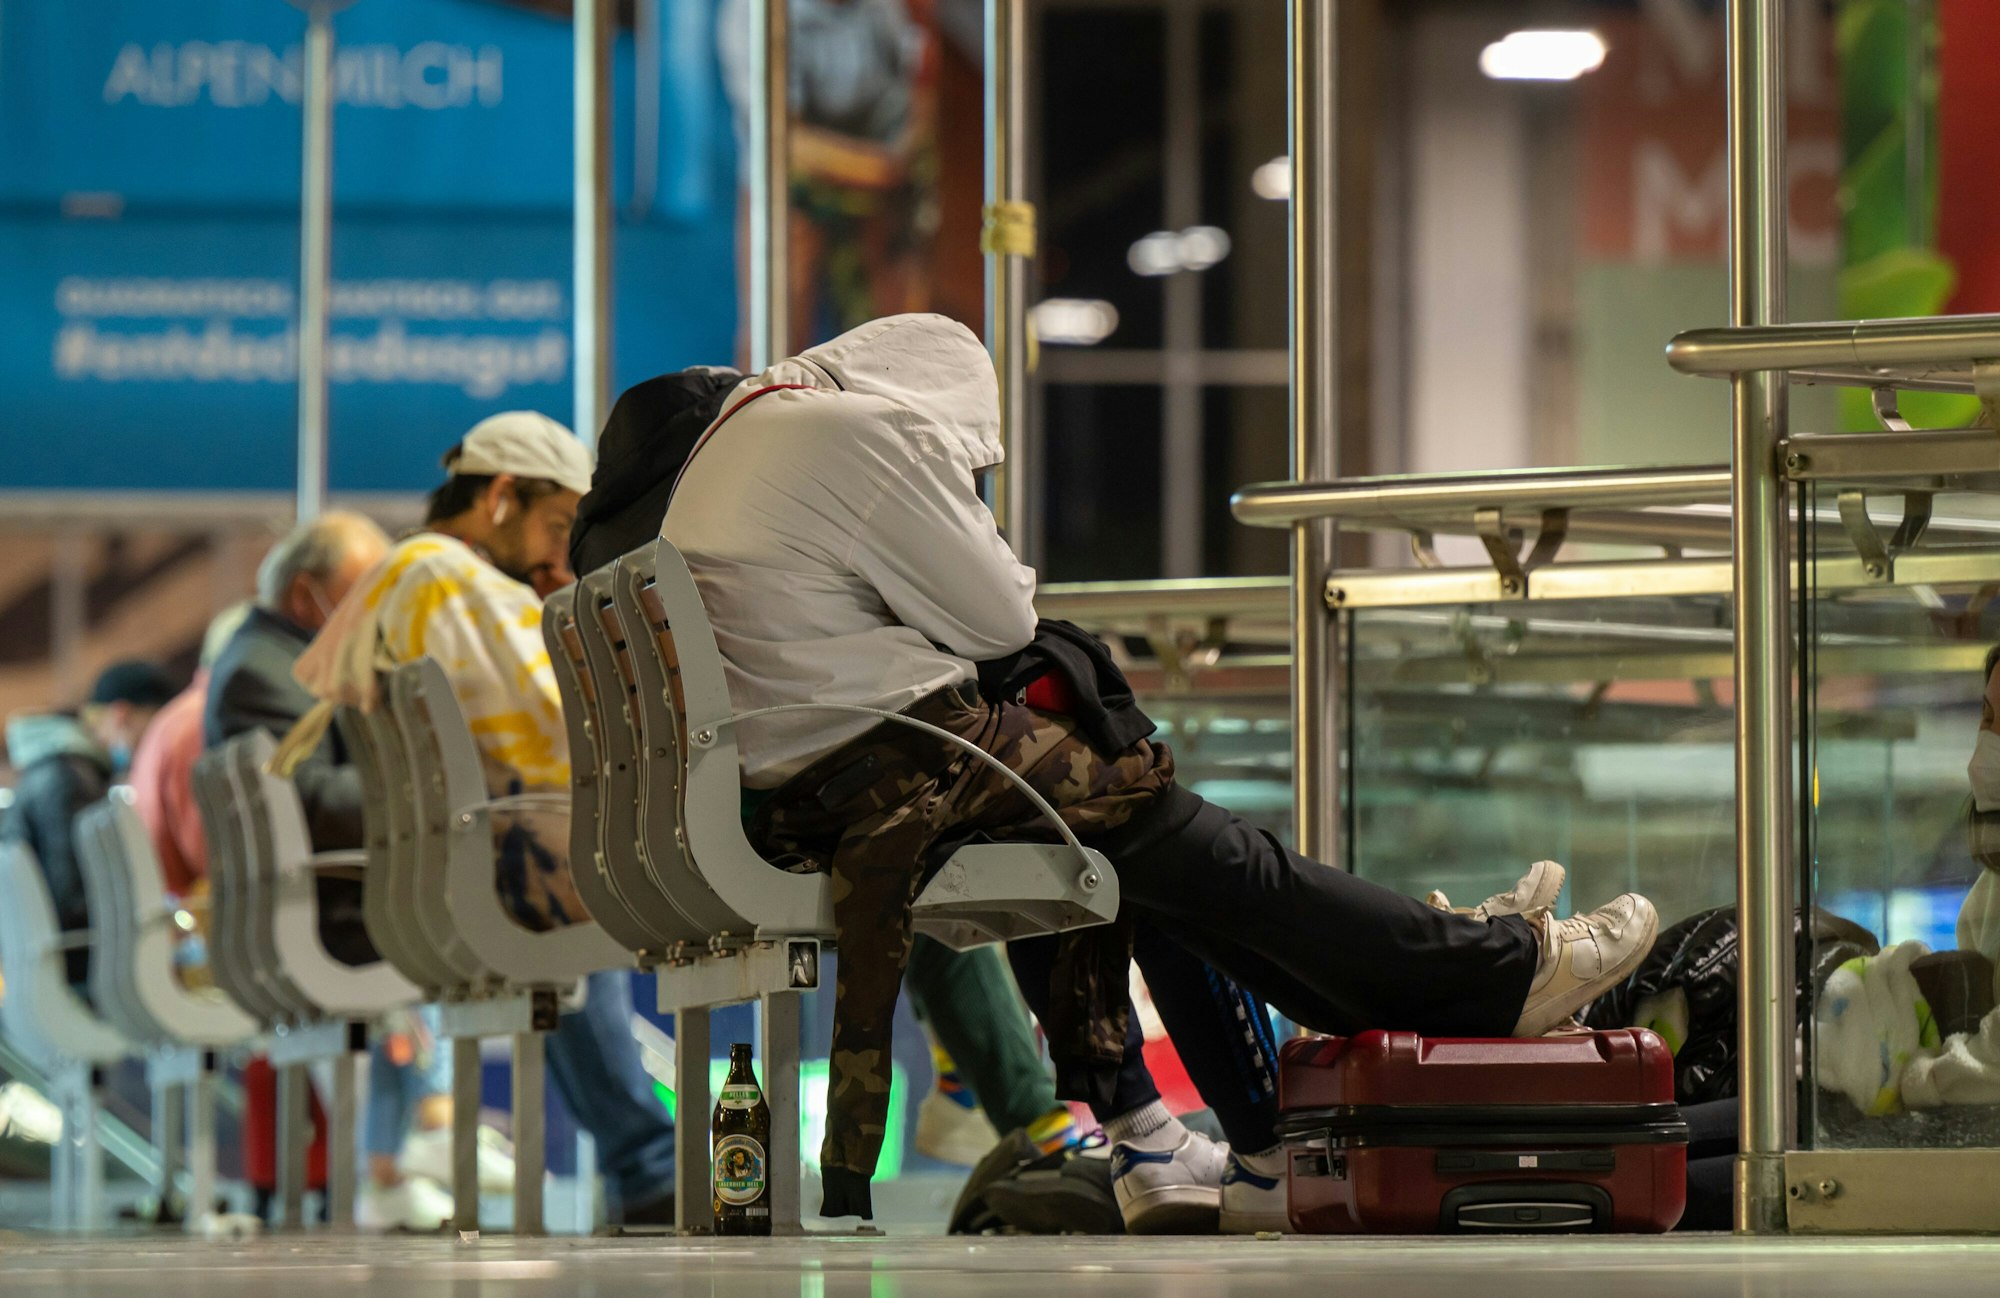 Reisende warten in den frühen Morgenstunden am Hauptbahnhof München. Auf Grund eines Streiks der Gewerkschaft der Lokführer (GDL) fallen Züge aus. Die Gewerkschaft dehnte in den Morgenstunden ihren Streik für bessere Arbeitskonditionen vom Güterverkehr auf die Personenbeförderungen aus.